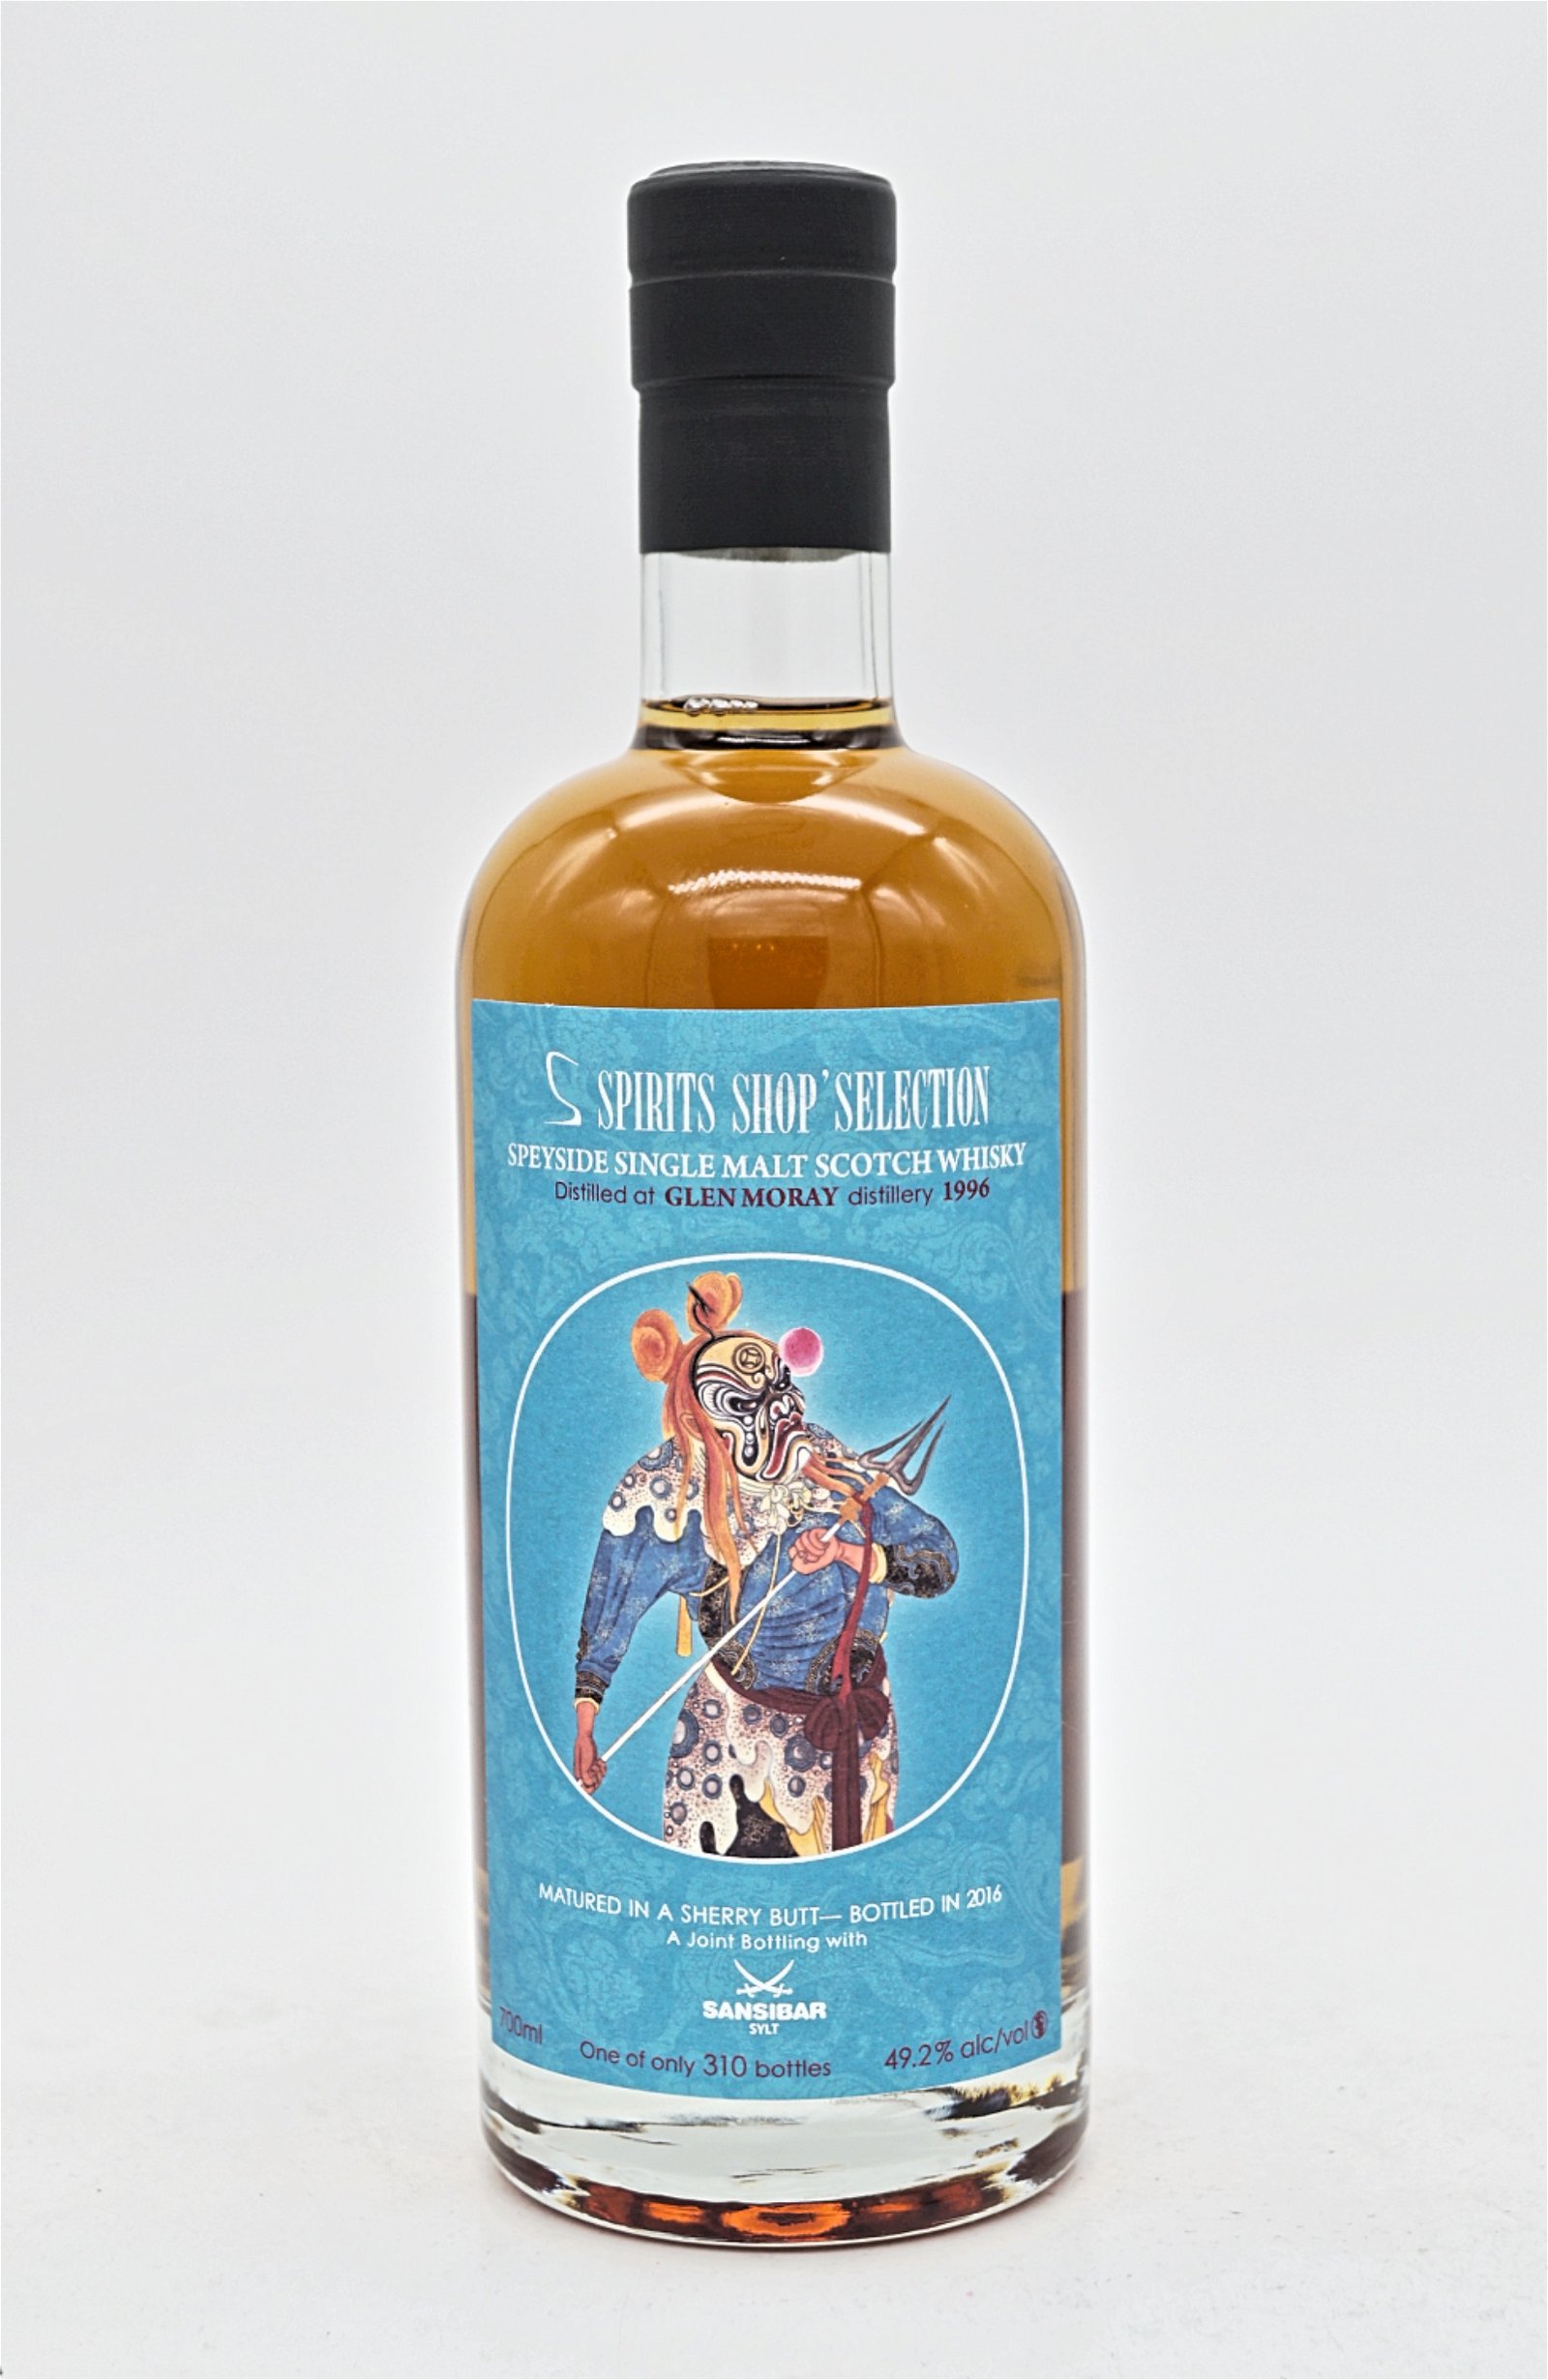 S-Spirits Shop Selection 20 Jahre Glen Moray Distillery 1996/2016 Sherry Butt Speyside Single Malt Scotch Whisky